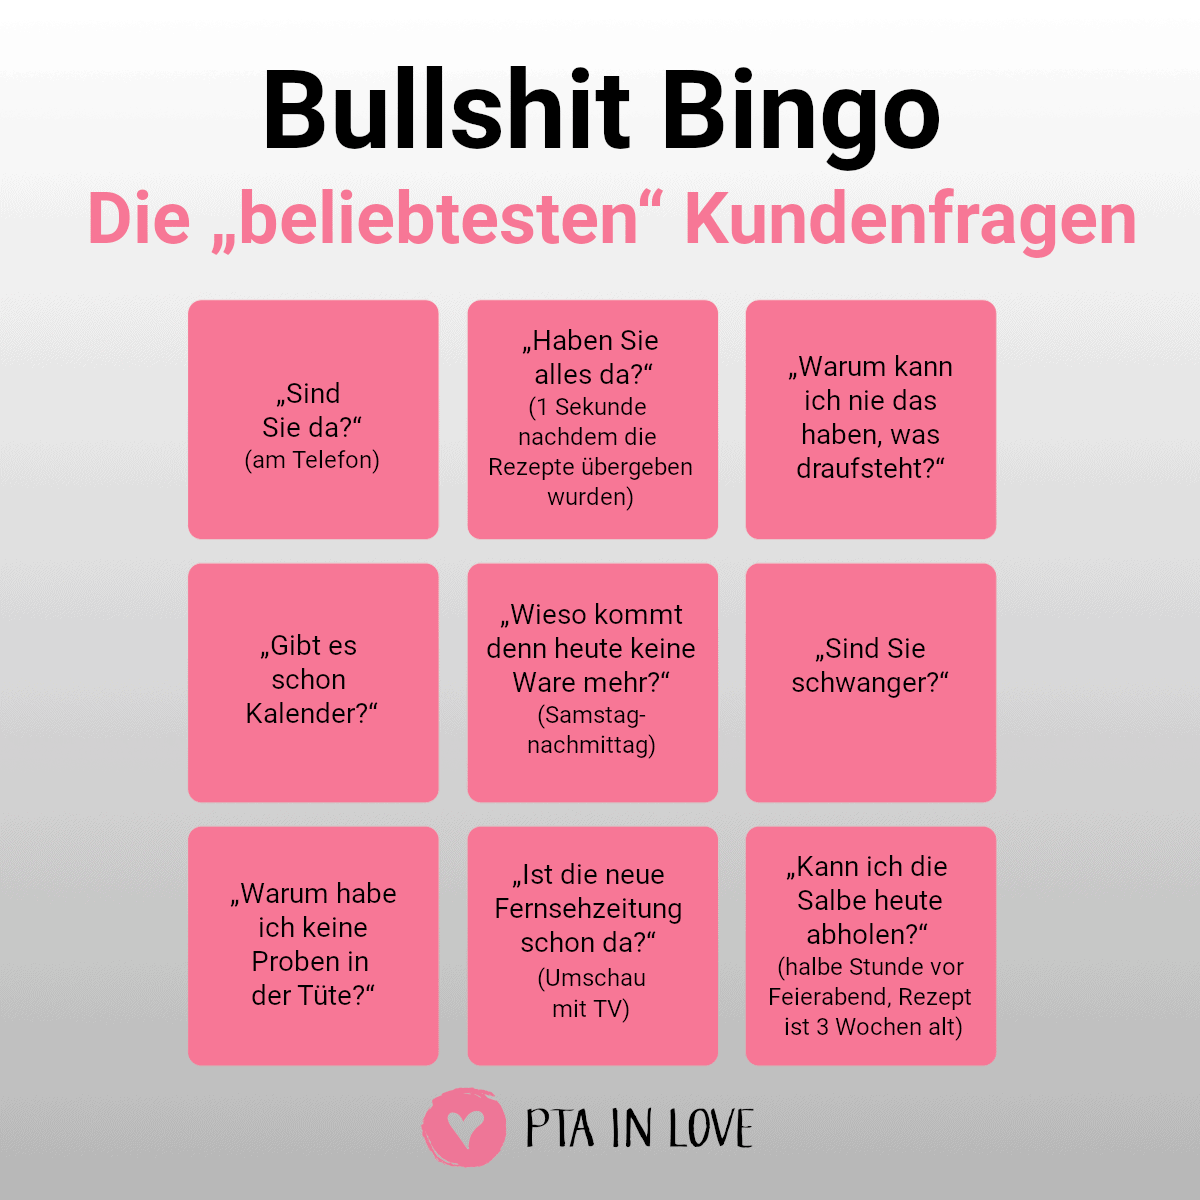 Bullshit-Bingo Kundenfragen